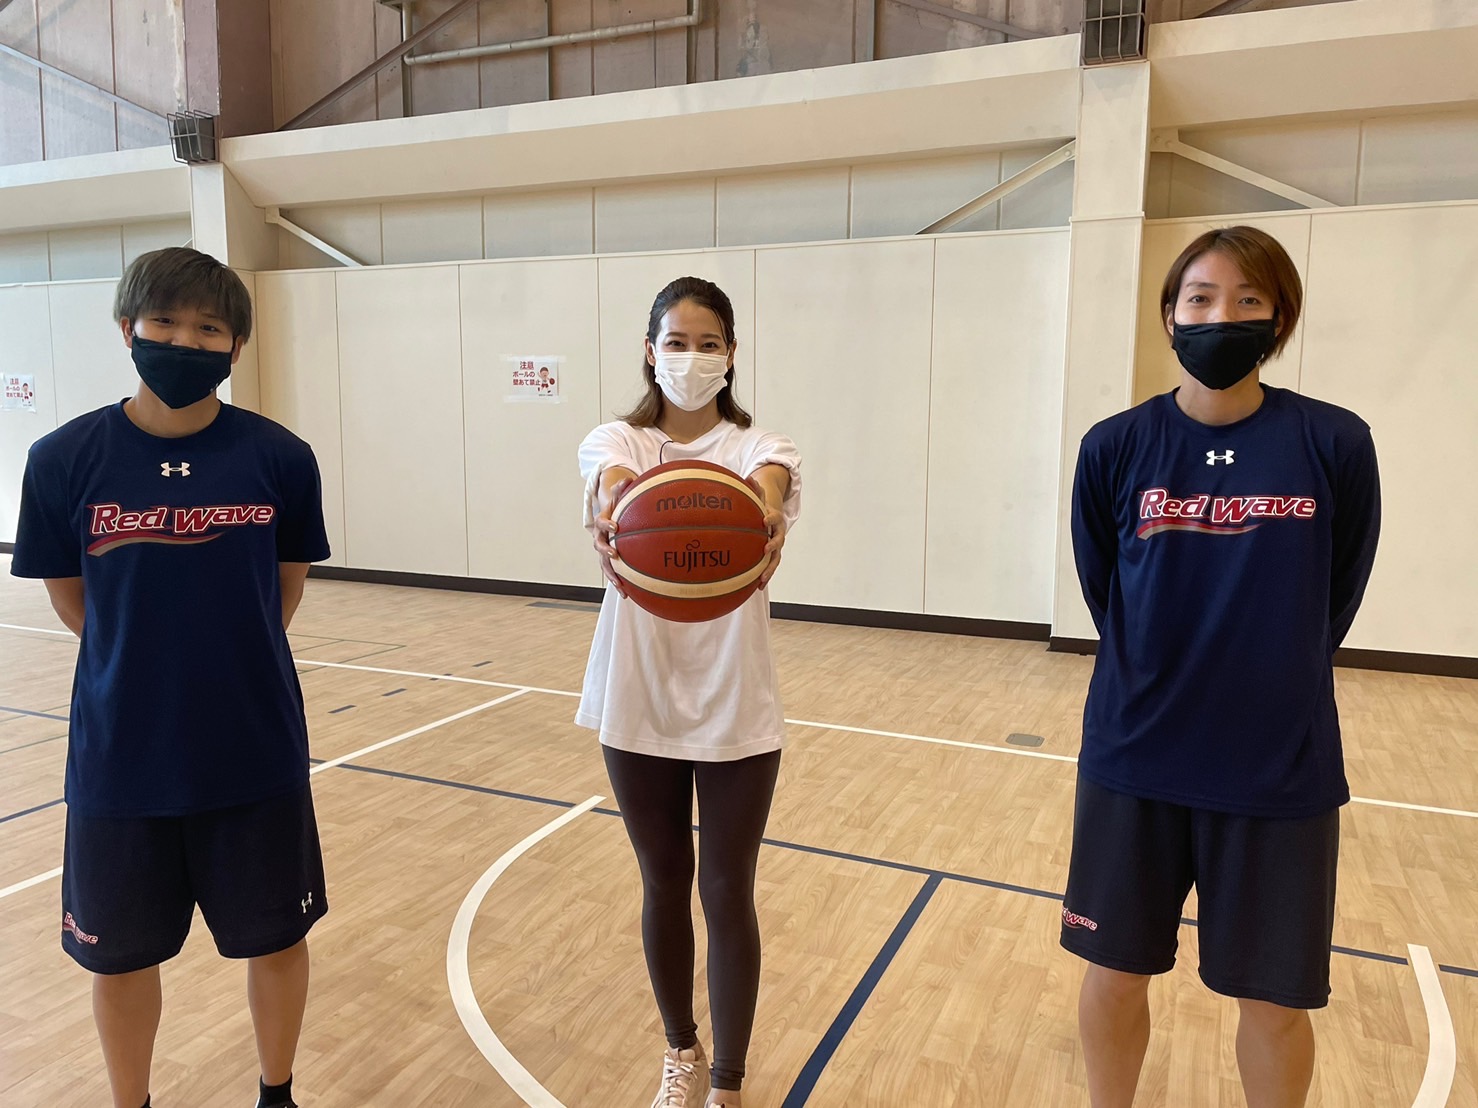 【写真】町田選手と篠崎選手、プレゼンターの3人が写っています